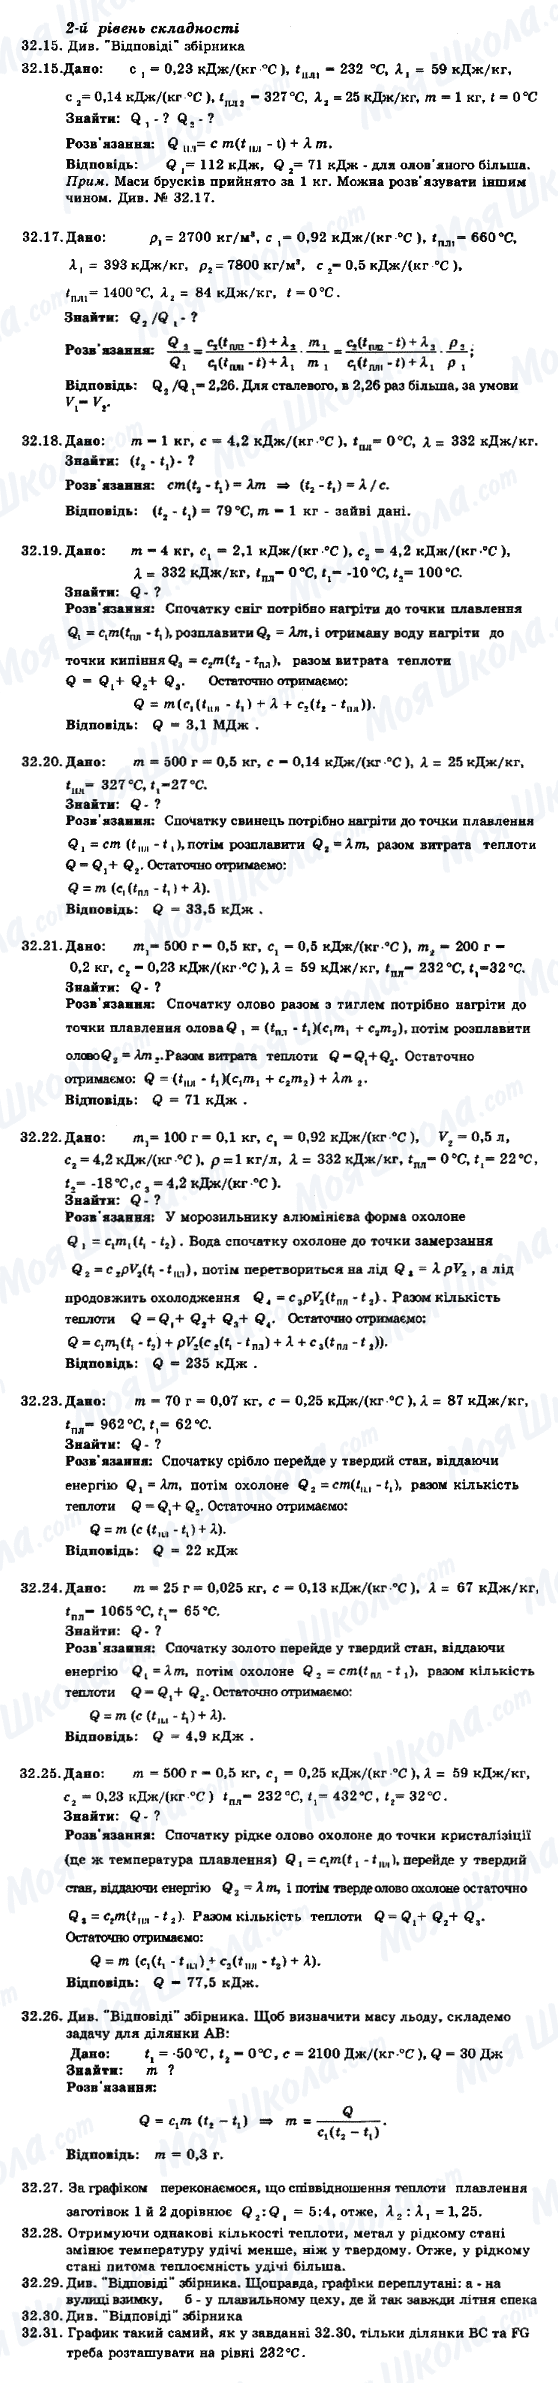 ГДЗ Фізика 8 клас сторінка 32.15-32.31